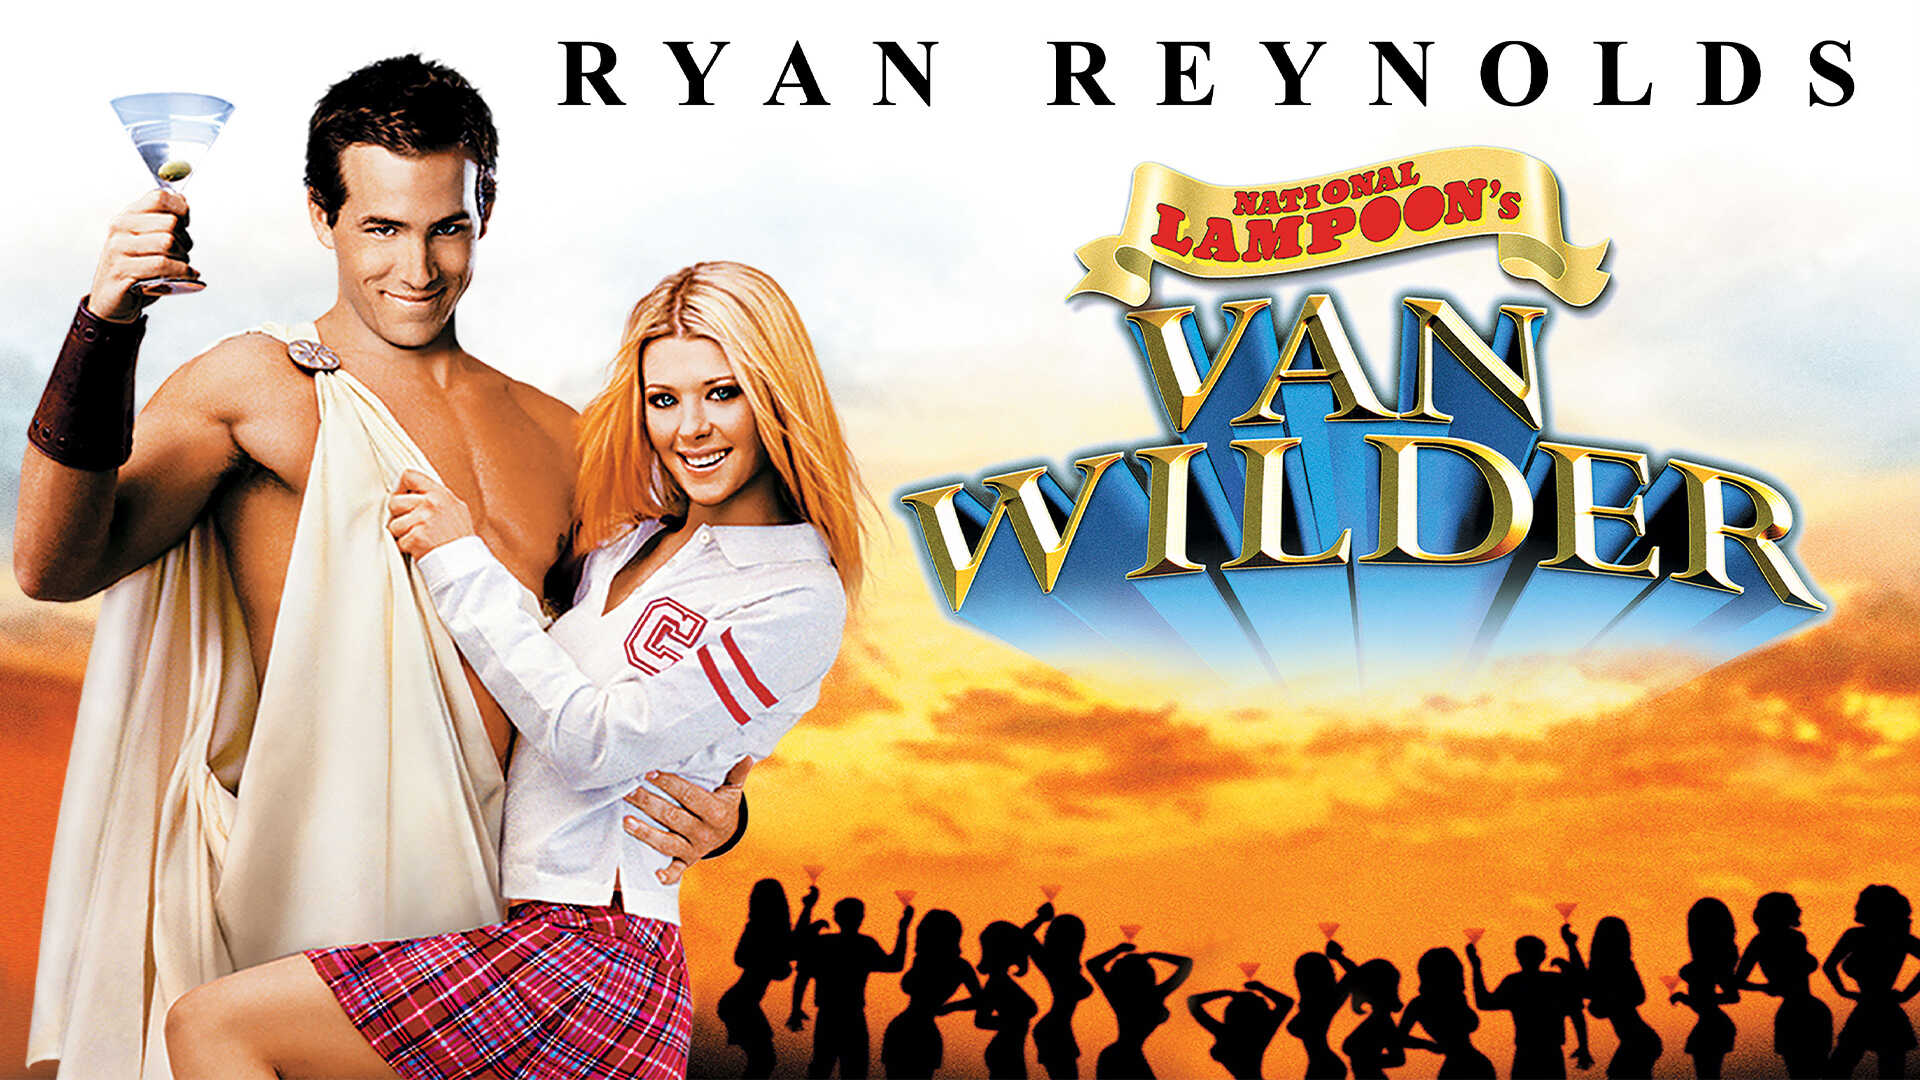 Van Wild. Party van. Van Wilder collection DVD Cover. Van Wilder collection DVD Covert.